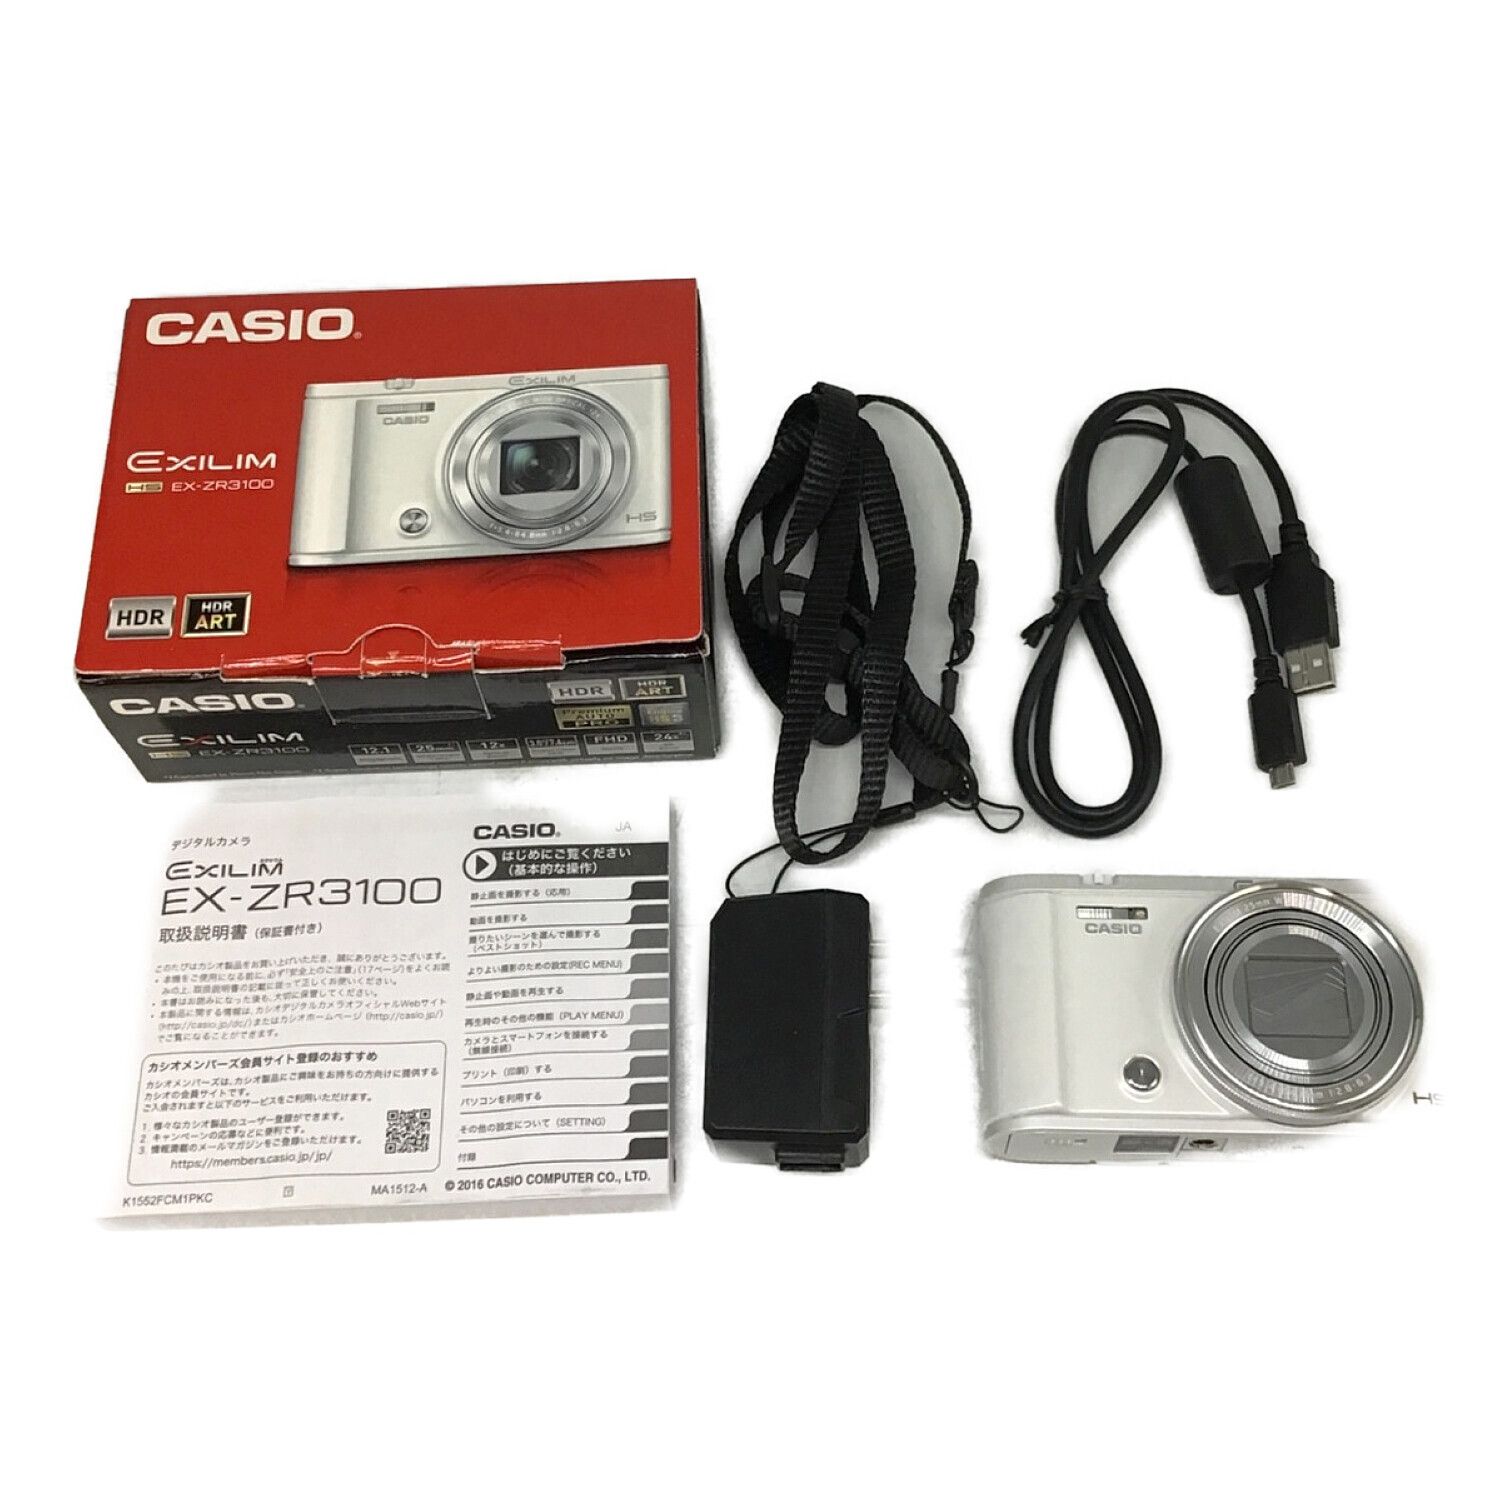 CASIO (カシオ) コンパクトデジタルカメラ EX-ZR3100 1276万画素(総